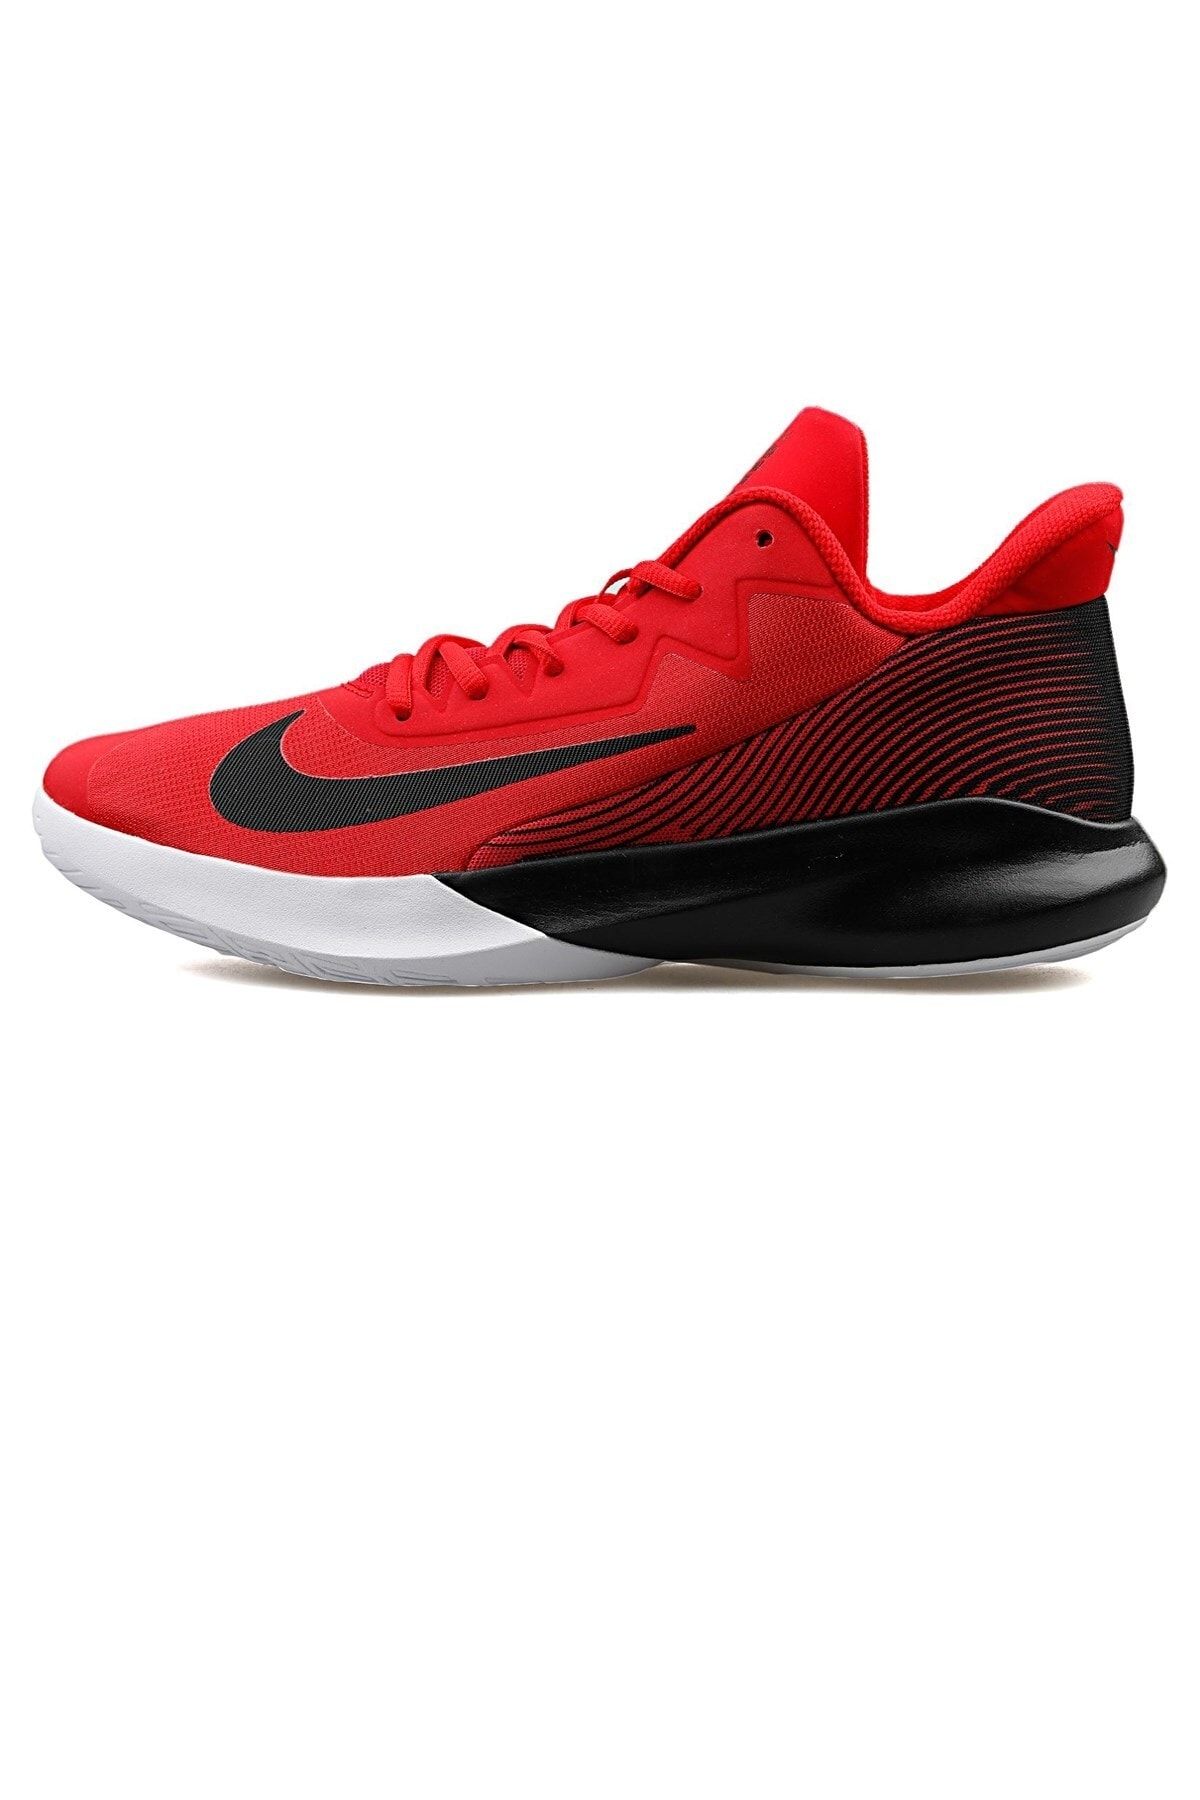 Nike Precision Iv Unisex Kırmızı Basketbol Ayakkabısı Ck1069-600